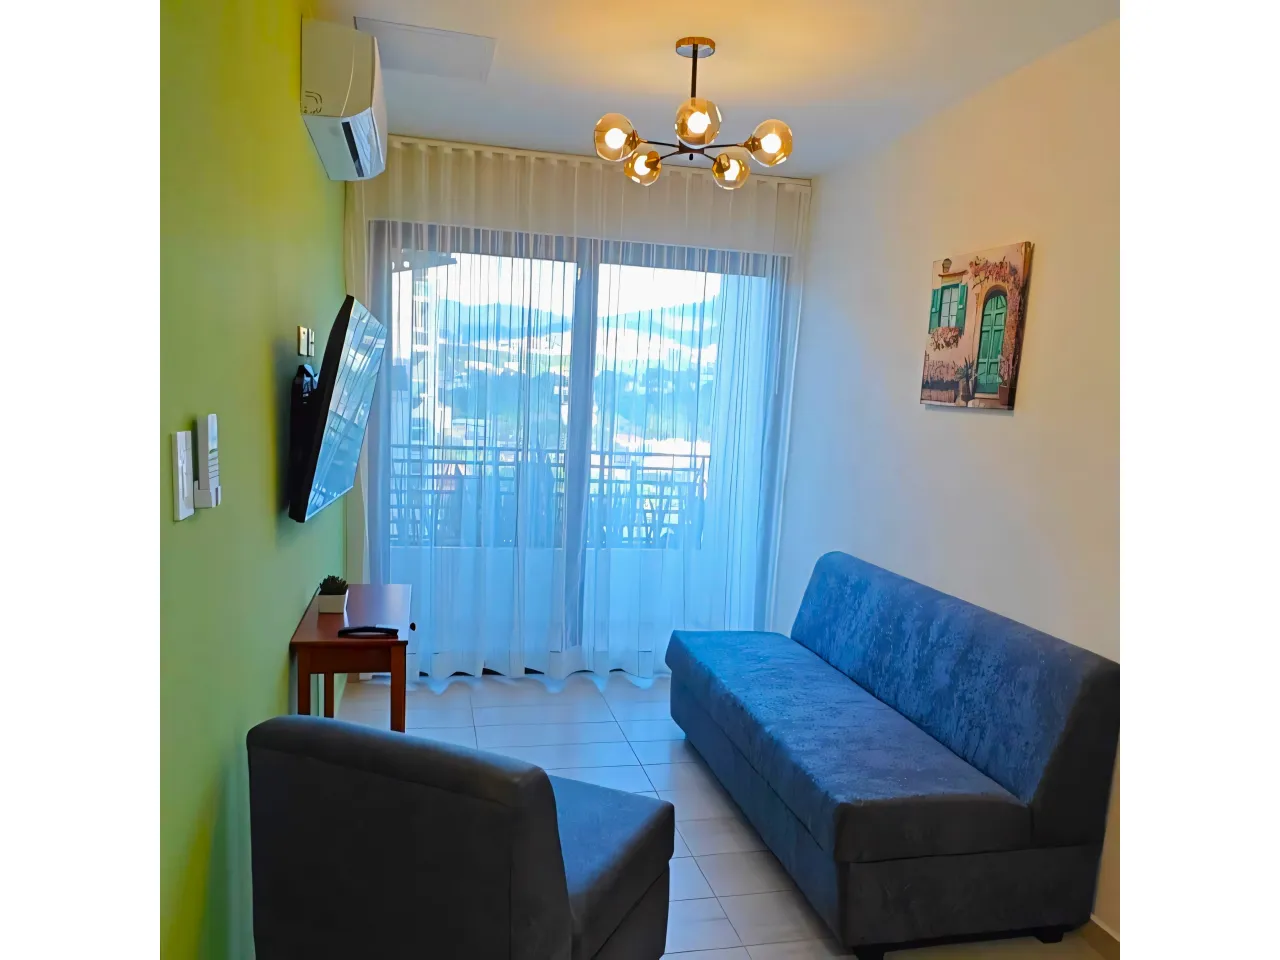 Sala de estar cuenta con paredes de color blanco combinadas con marillo, ademas la sala incluye dos sof+as, un televisor, una mesa de madera, aire acondicionado y acceso al área de balcón.